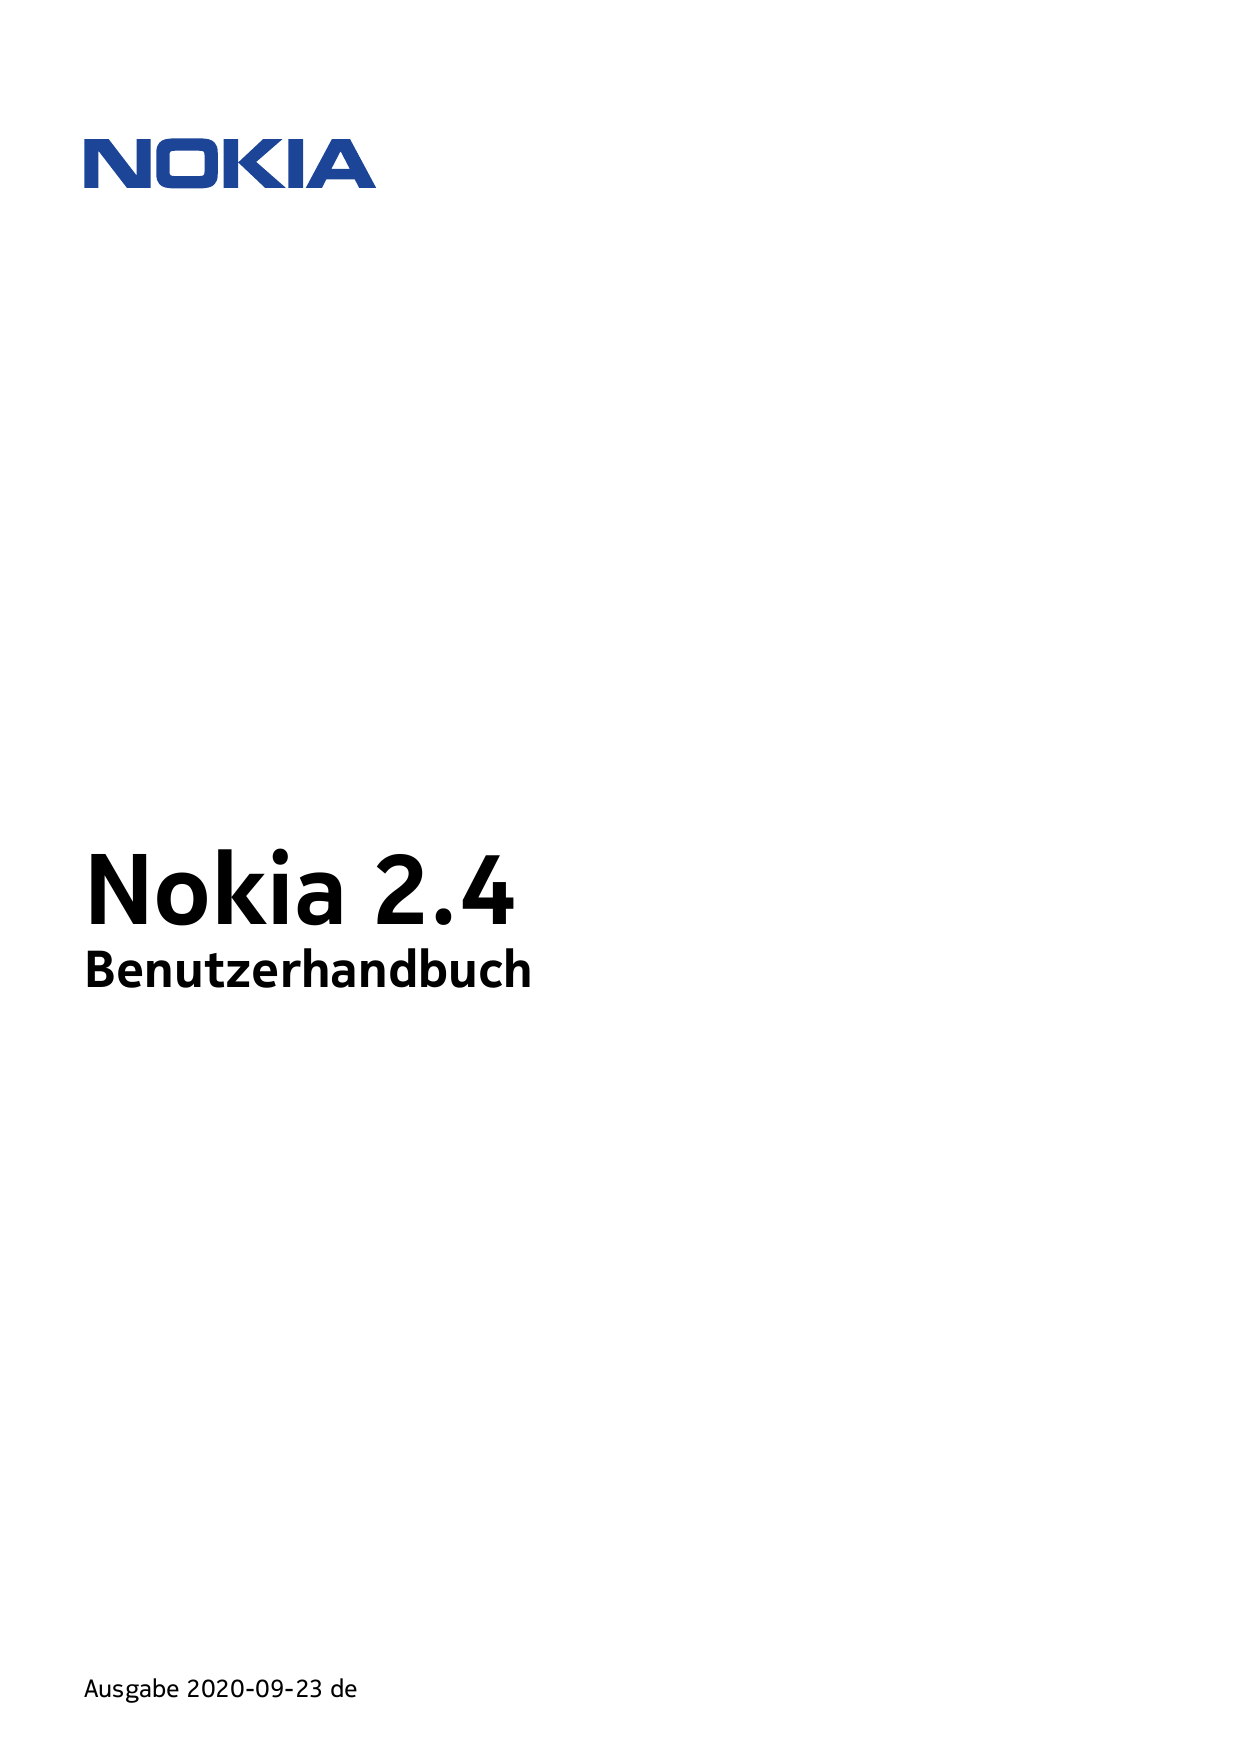 Nokia 2.4BenutzerhandbuchAusgabe 2020-09-23 de